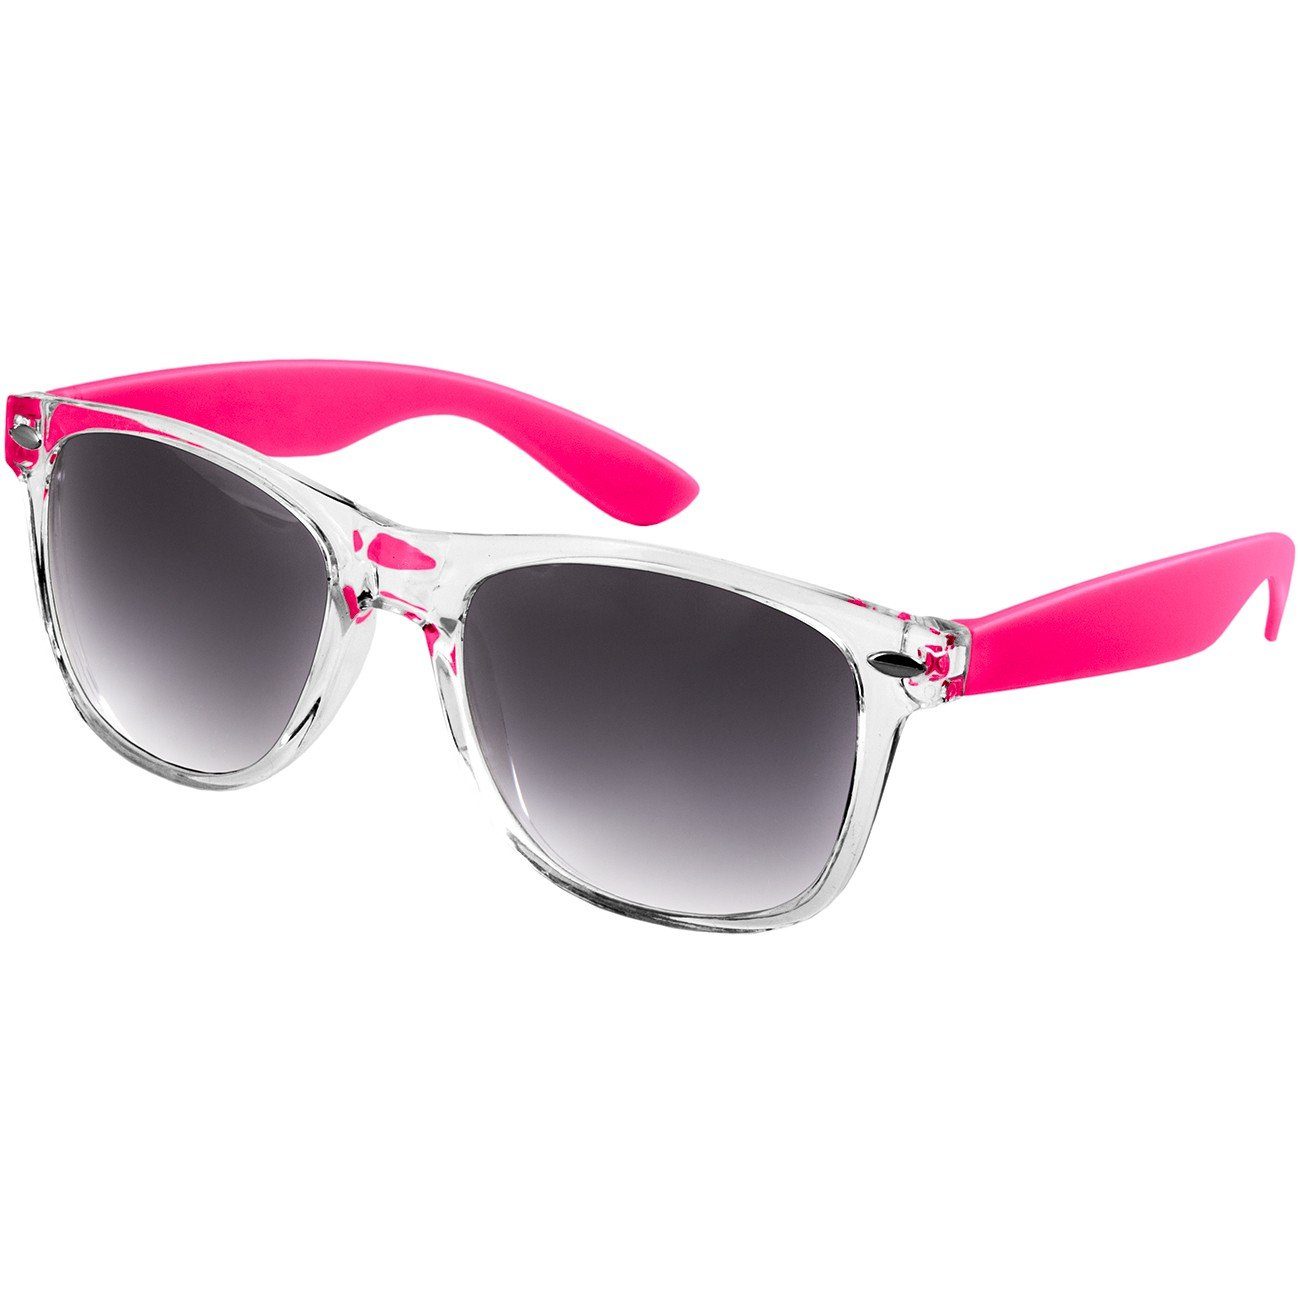 / getönt Sonnenbrille SG017 schwarz RETRO Caspar Damen pink Designbrille